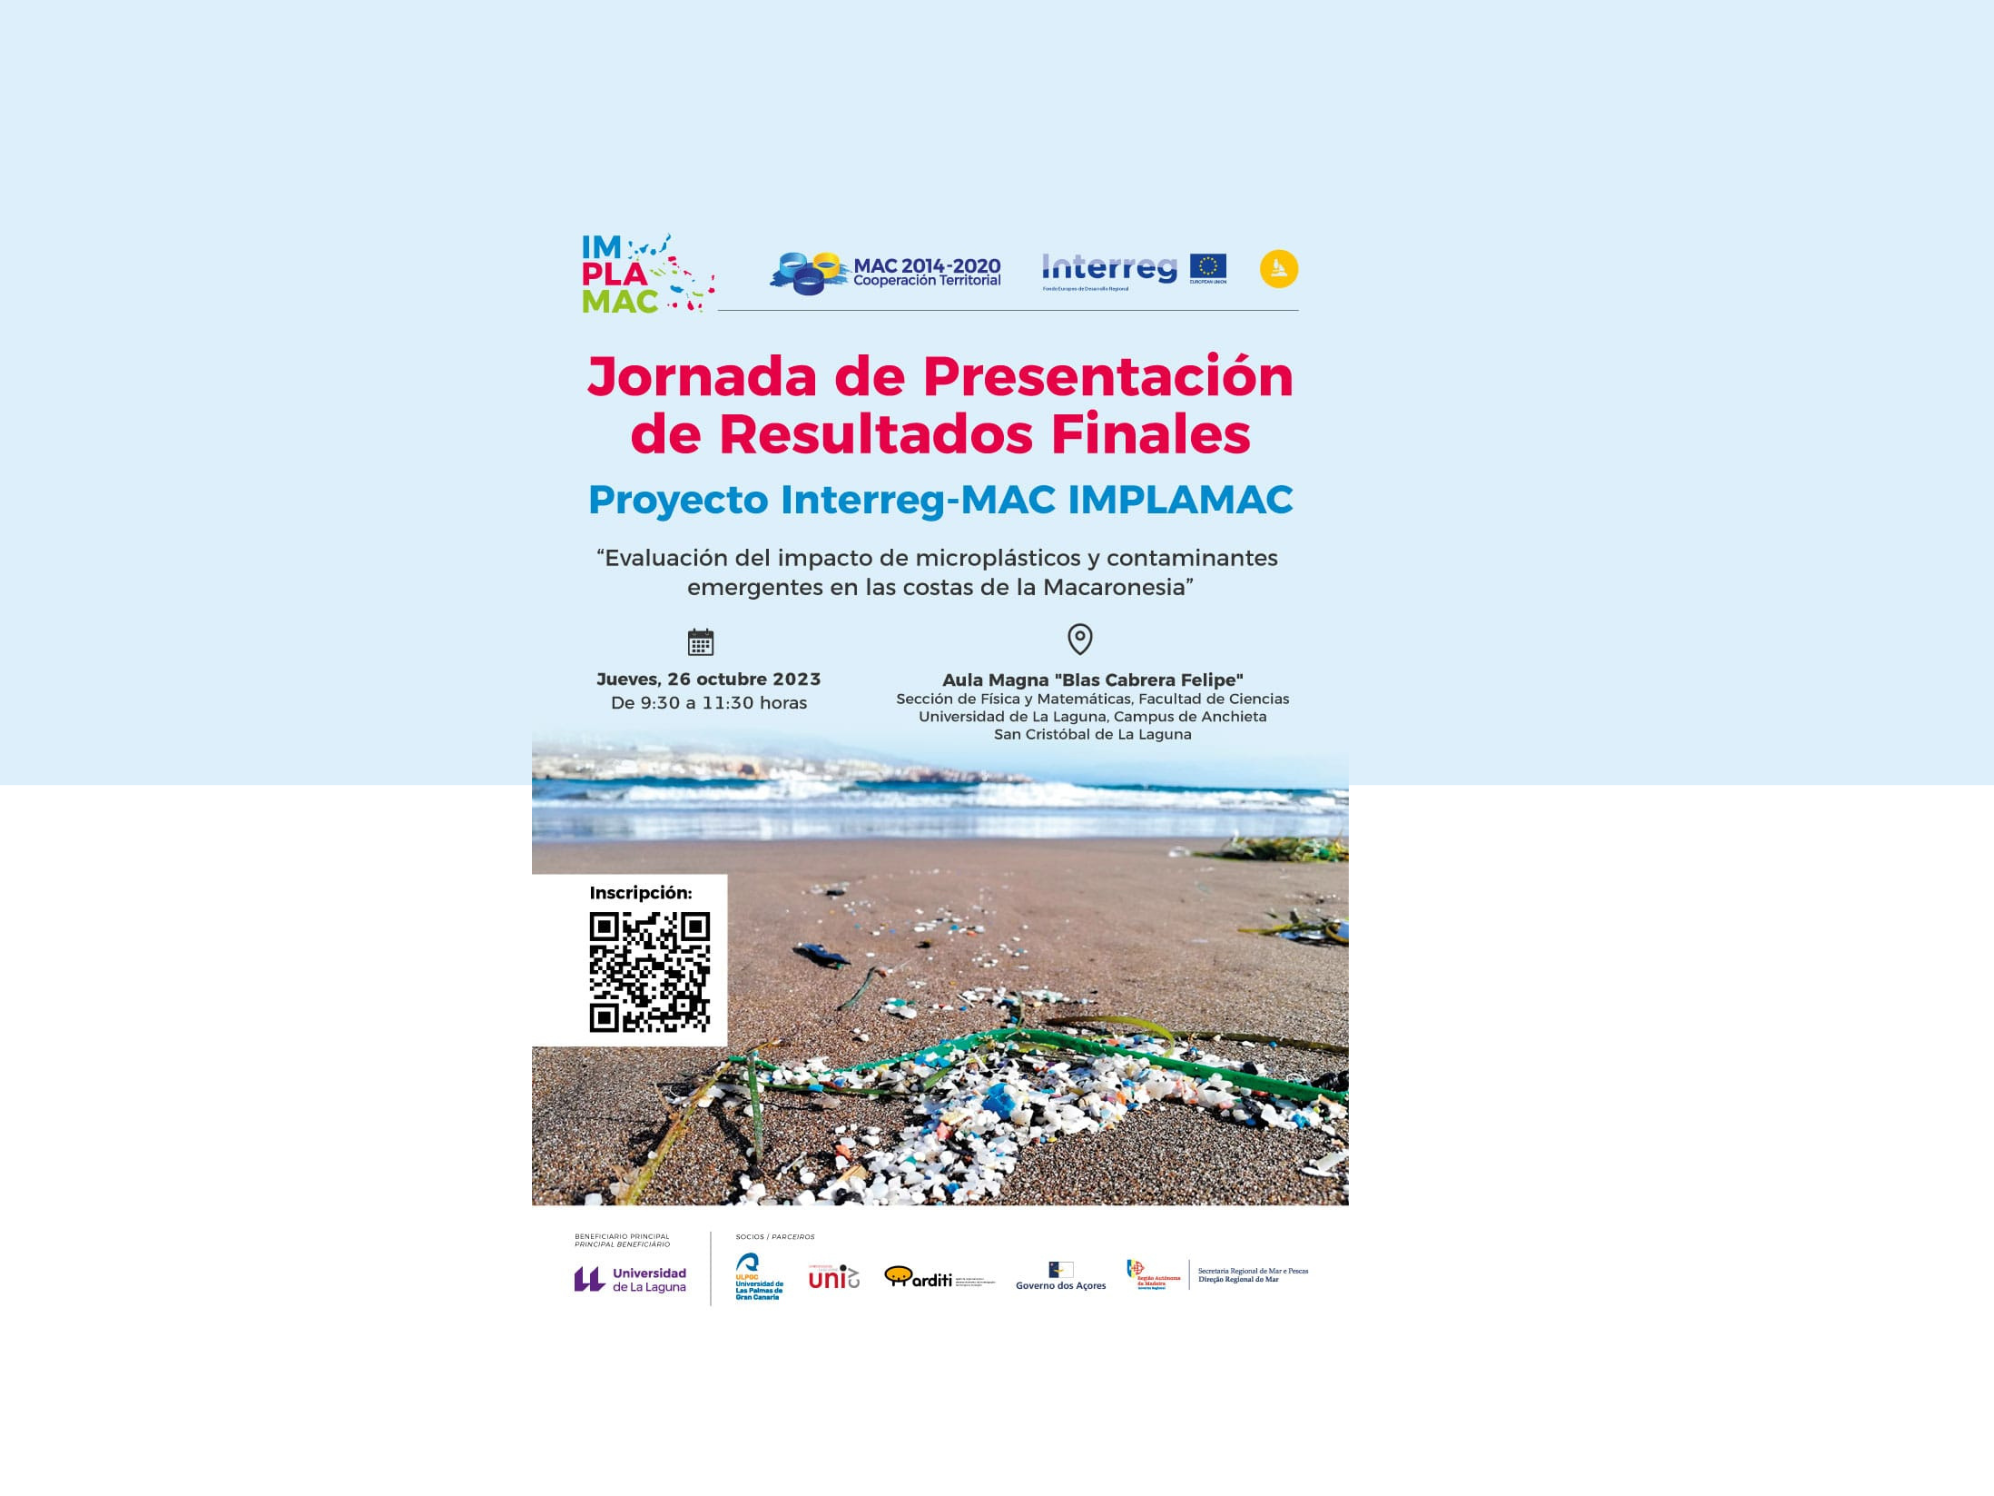 Proyecto Interreg-MAC IMPLAMAC: Jornada de Presentación de Resultados FINALES